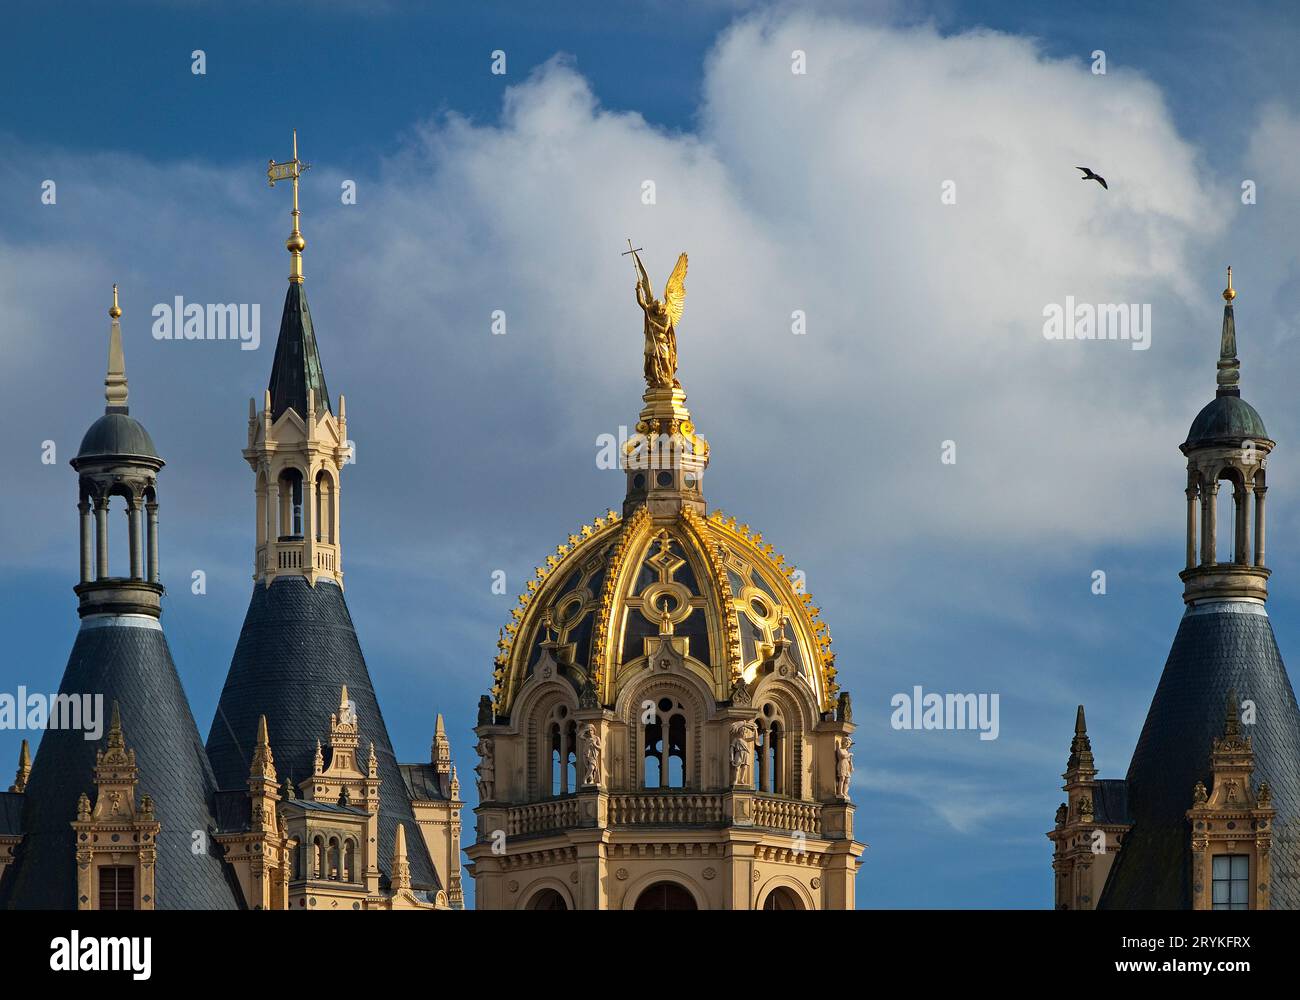 Statua dorata dell'Arcangelo Michele, Castello di Schwerin, Schwerin, Germania, Europa Foto Stock